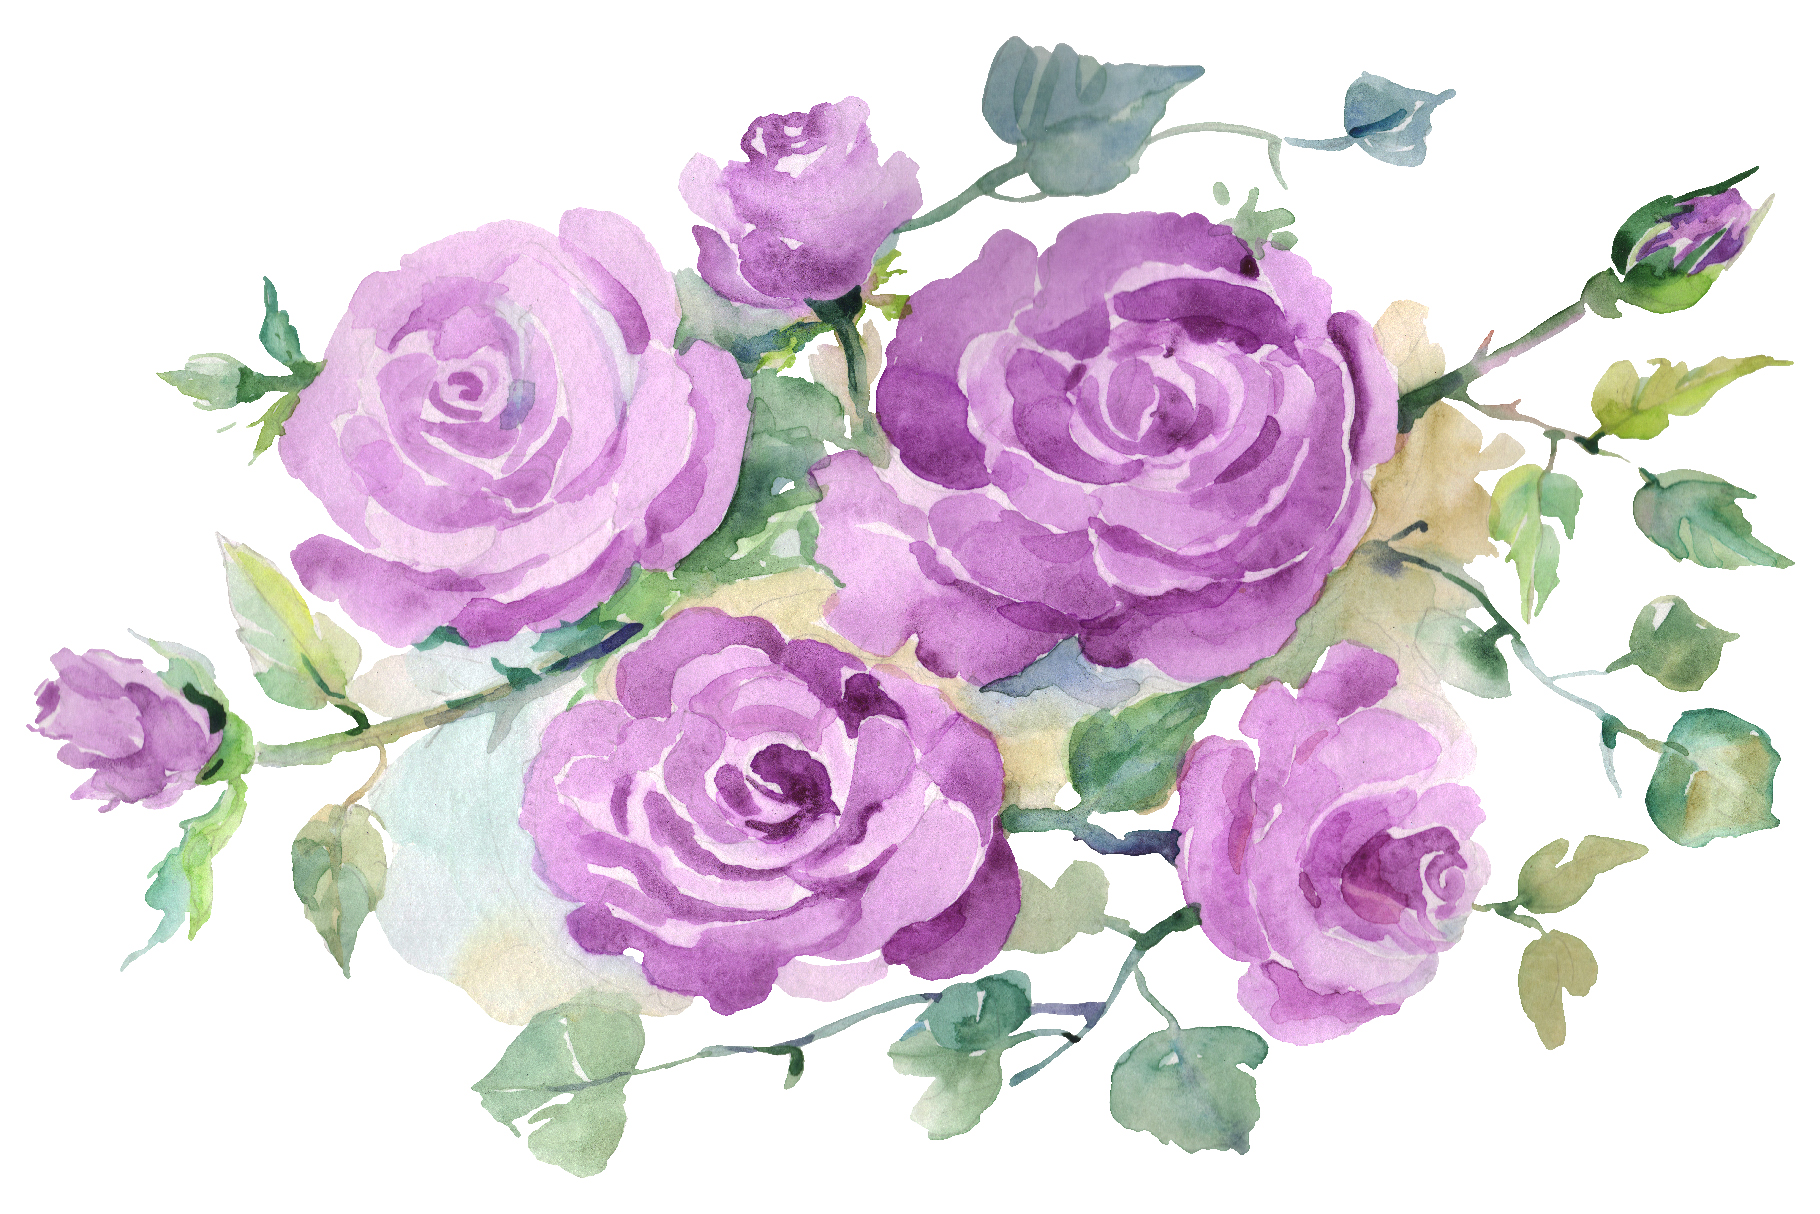 Tổng hợp hình ảnh hoa hồng tím đẹp nhất - [Kích thước hình ảnh: 1820x1214 px]